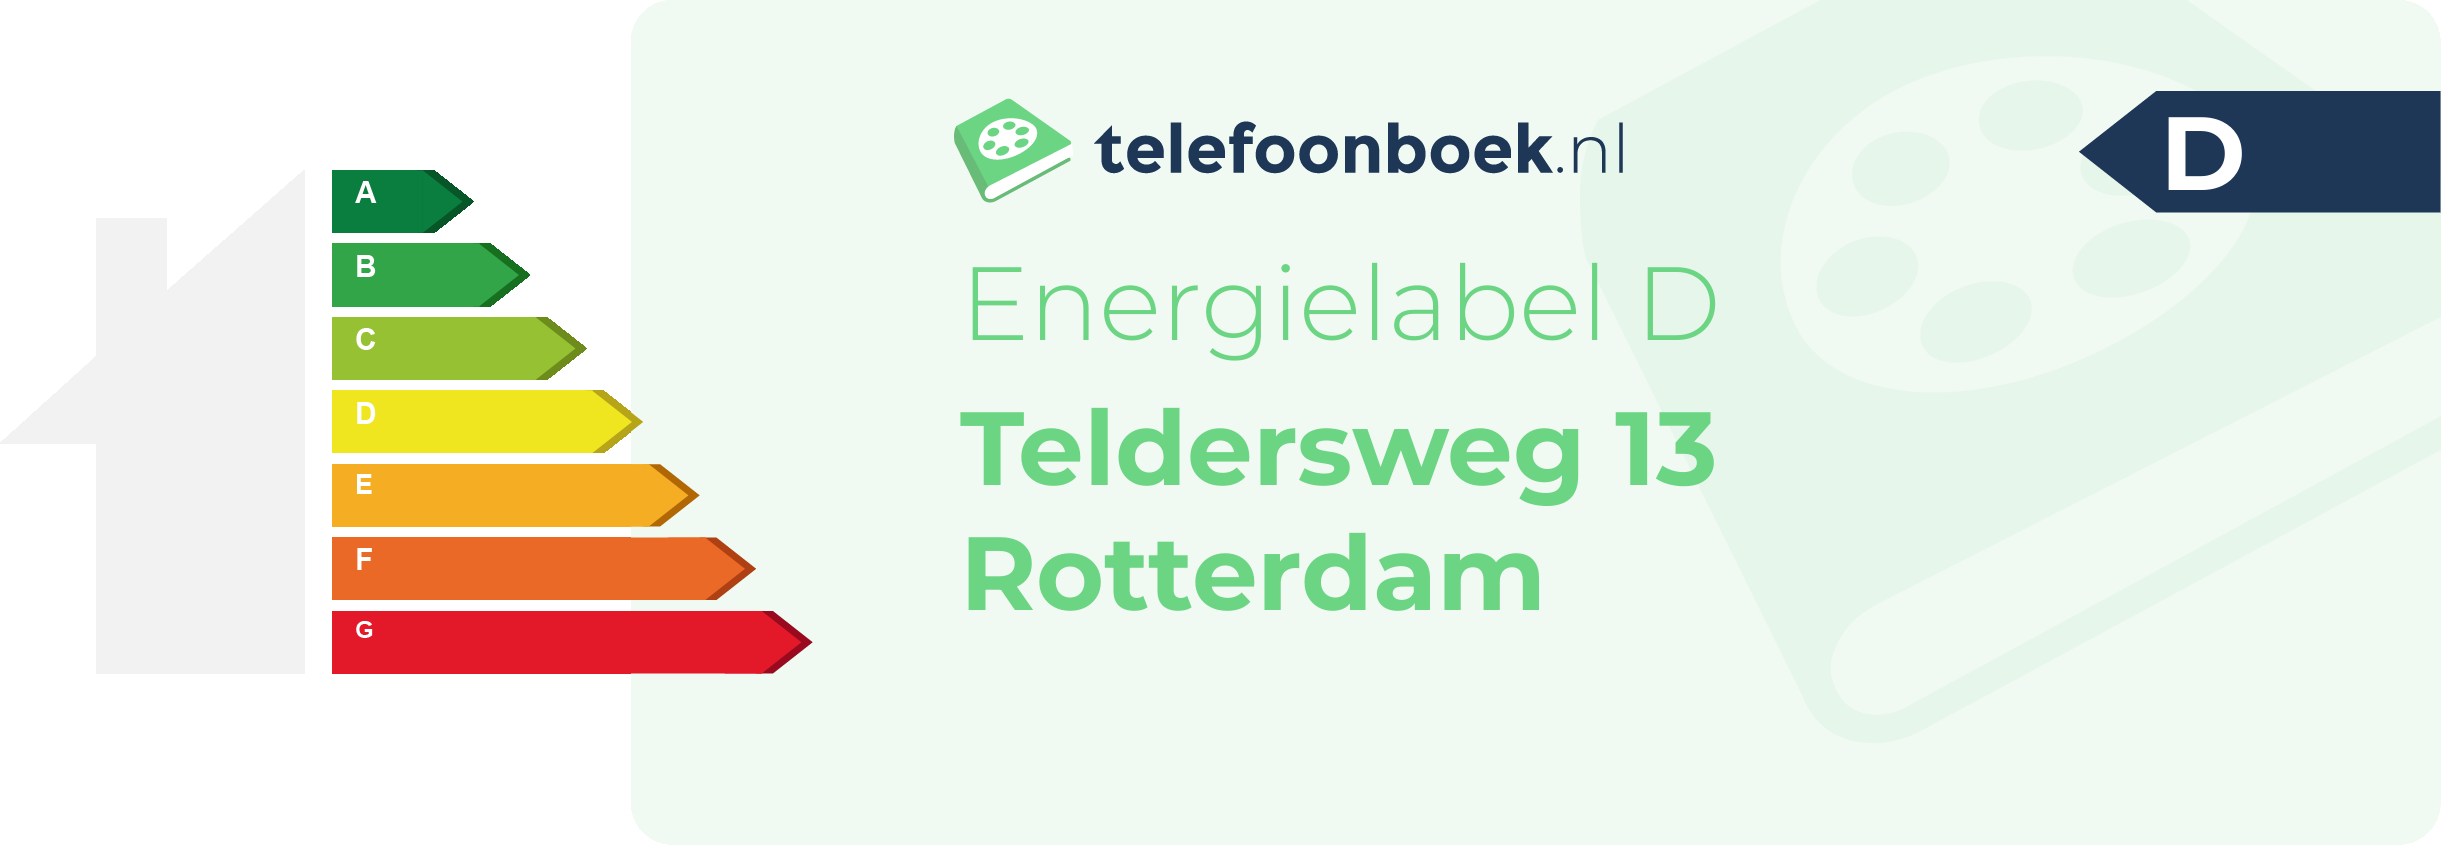 Energielabel Teldersweg 13 Rotterdam